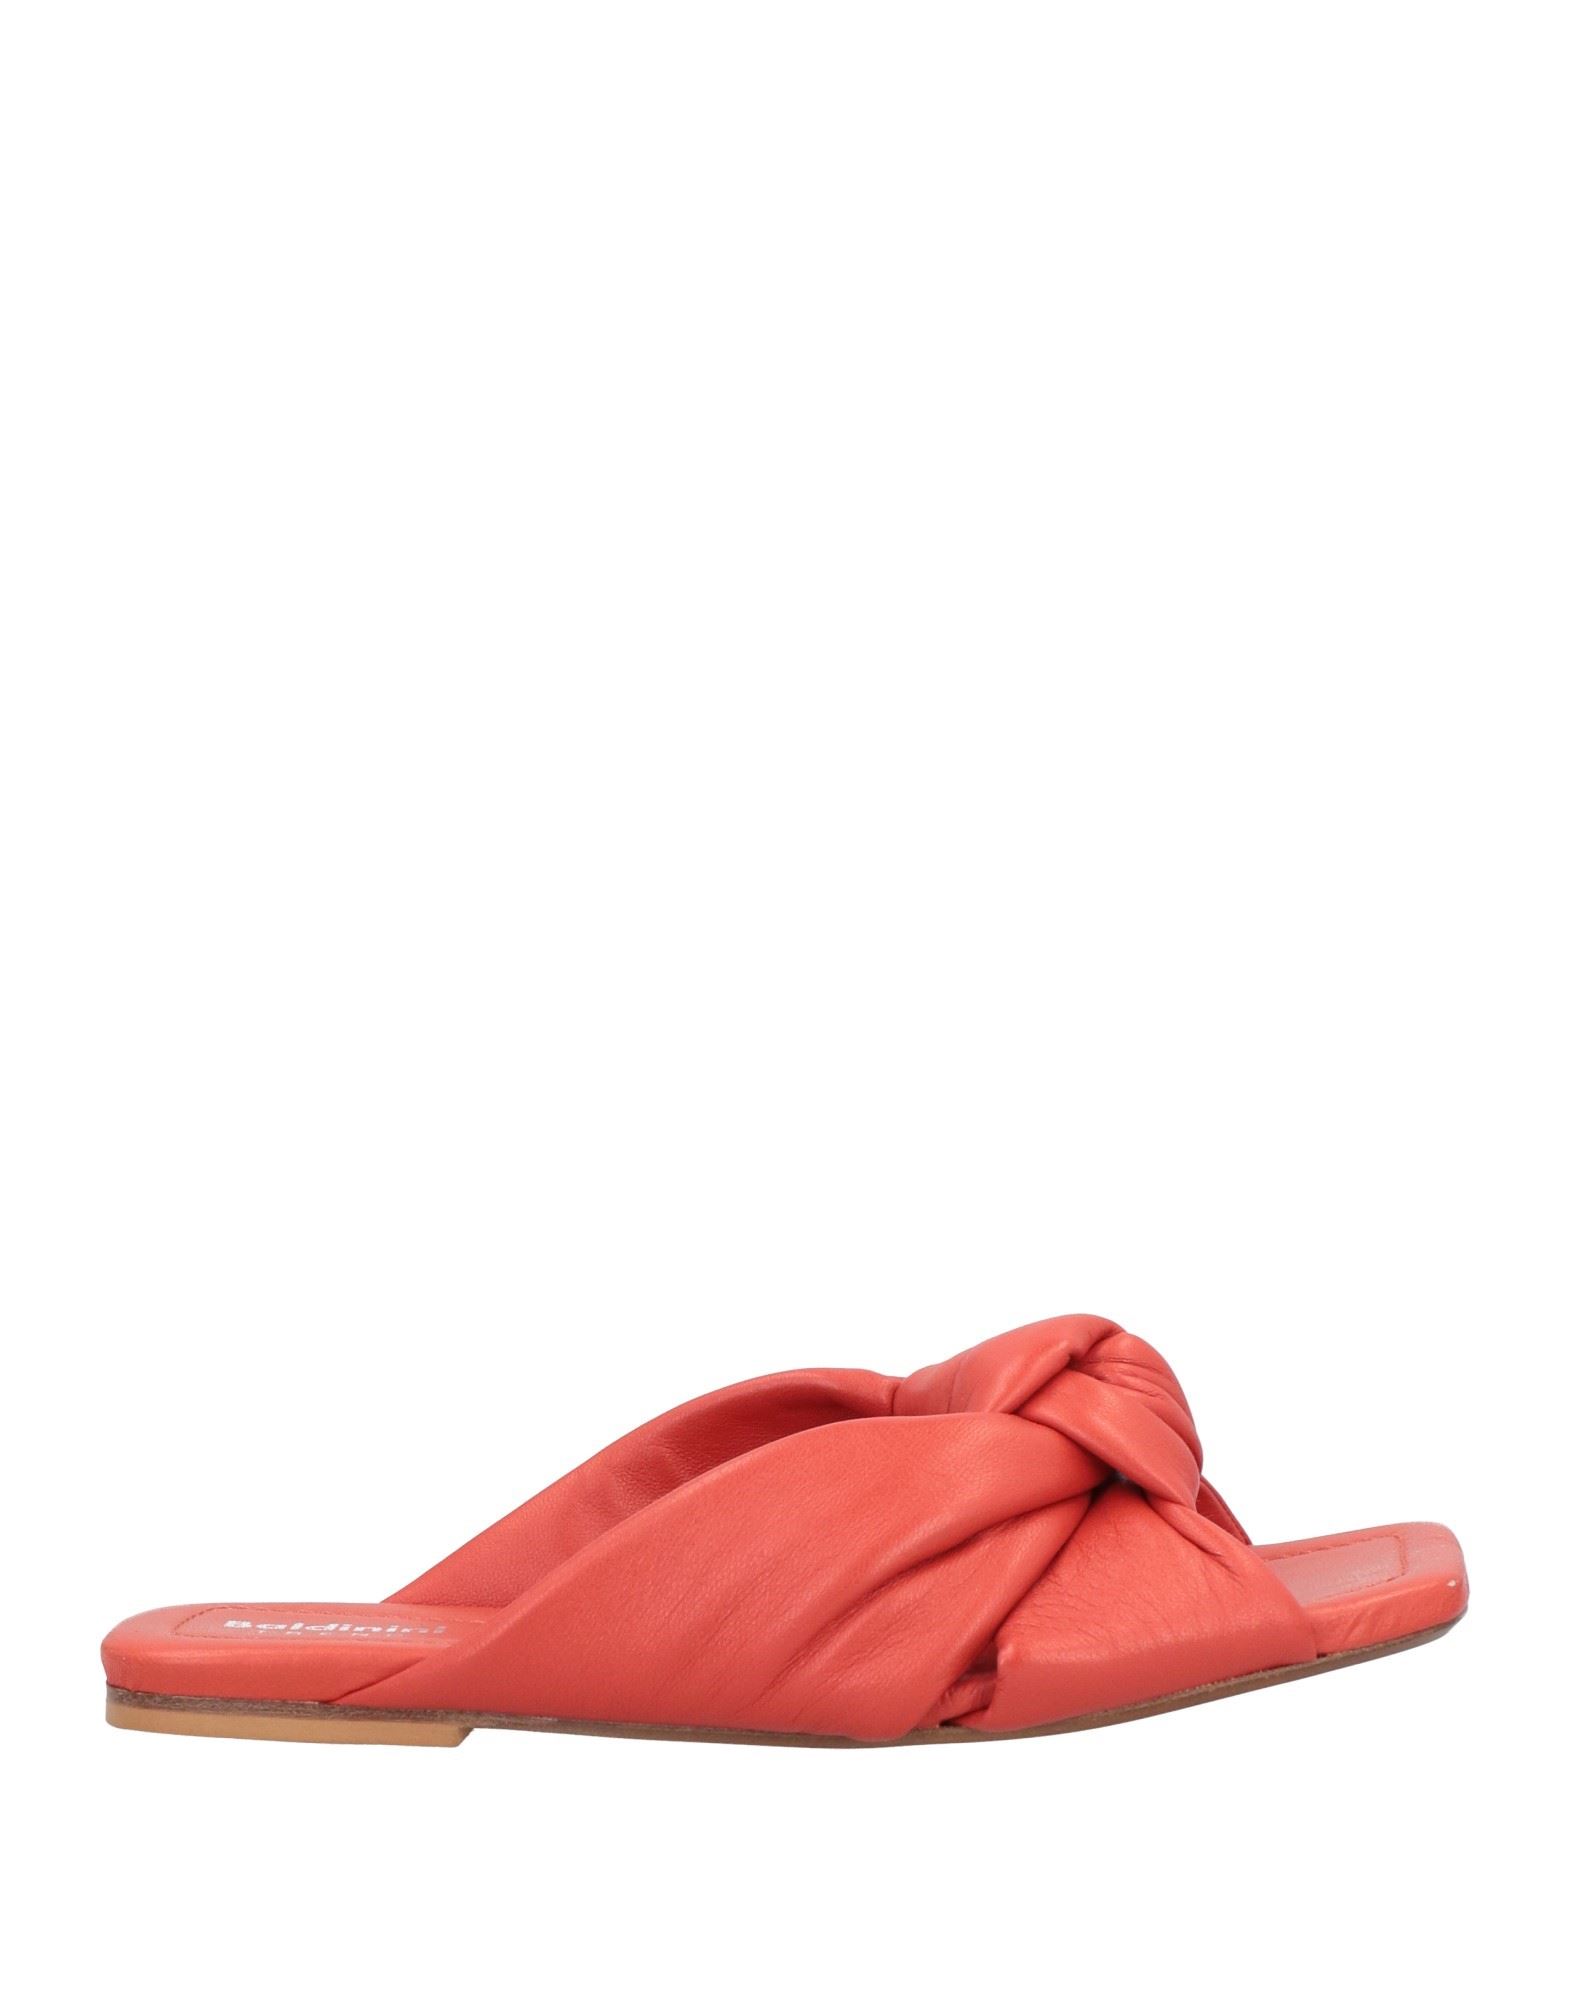 Baldinini Sandals In Tomato Red